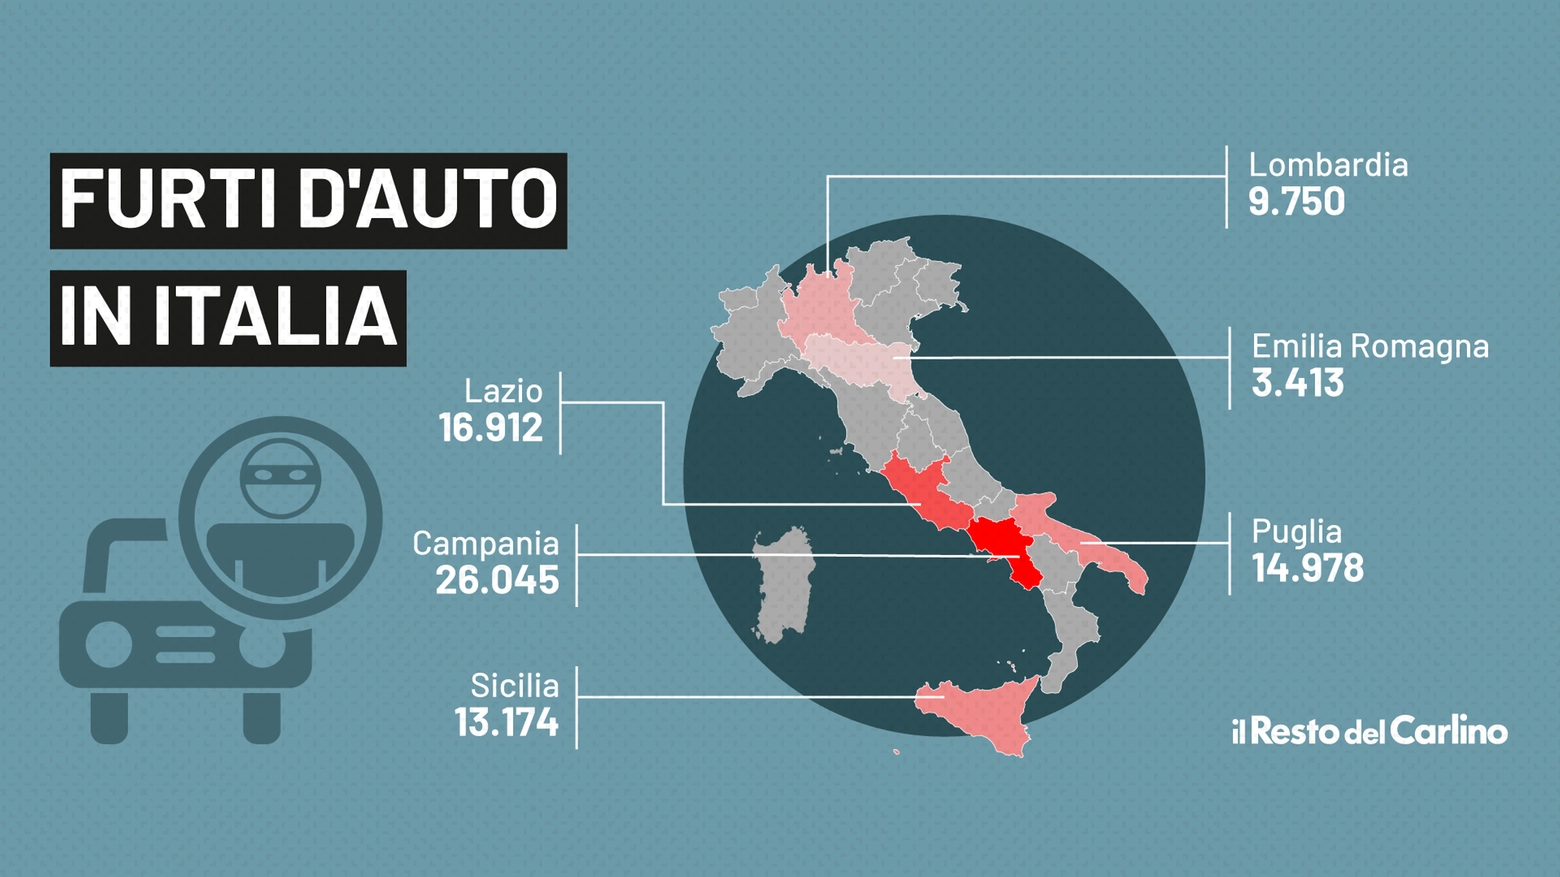 La mappa dei furti d'auto in Italia, le regioni più a rischio sono 5: Campania, Lazio, Puglia, Sicilia e Lombardia. Pochi furti in Emilia Romagna